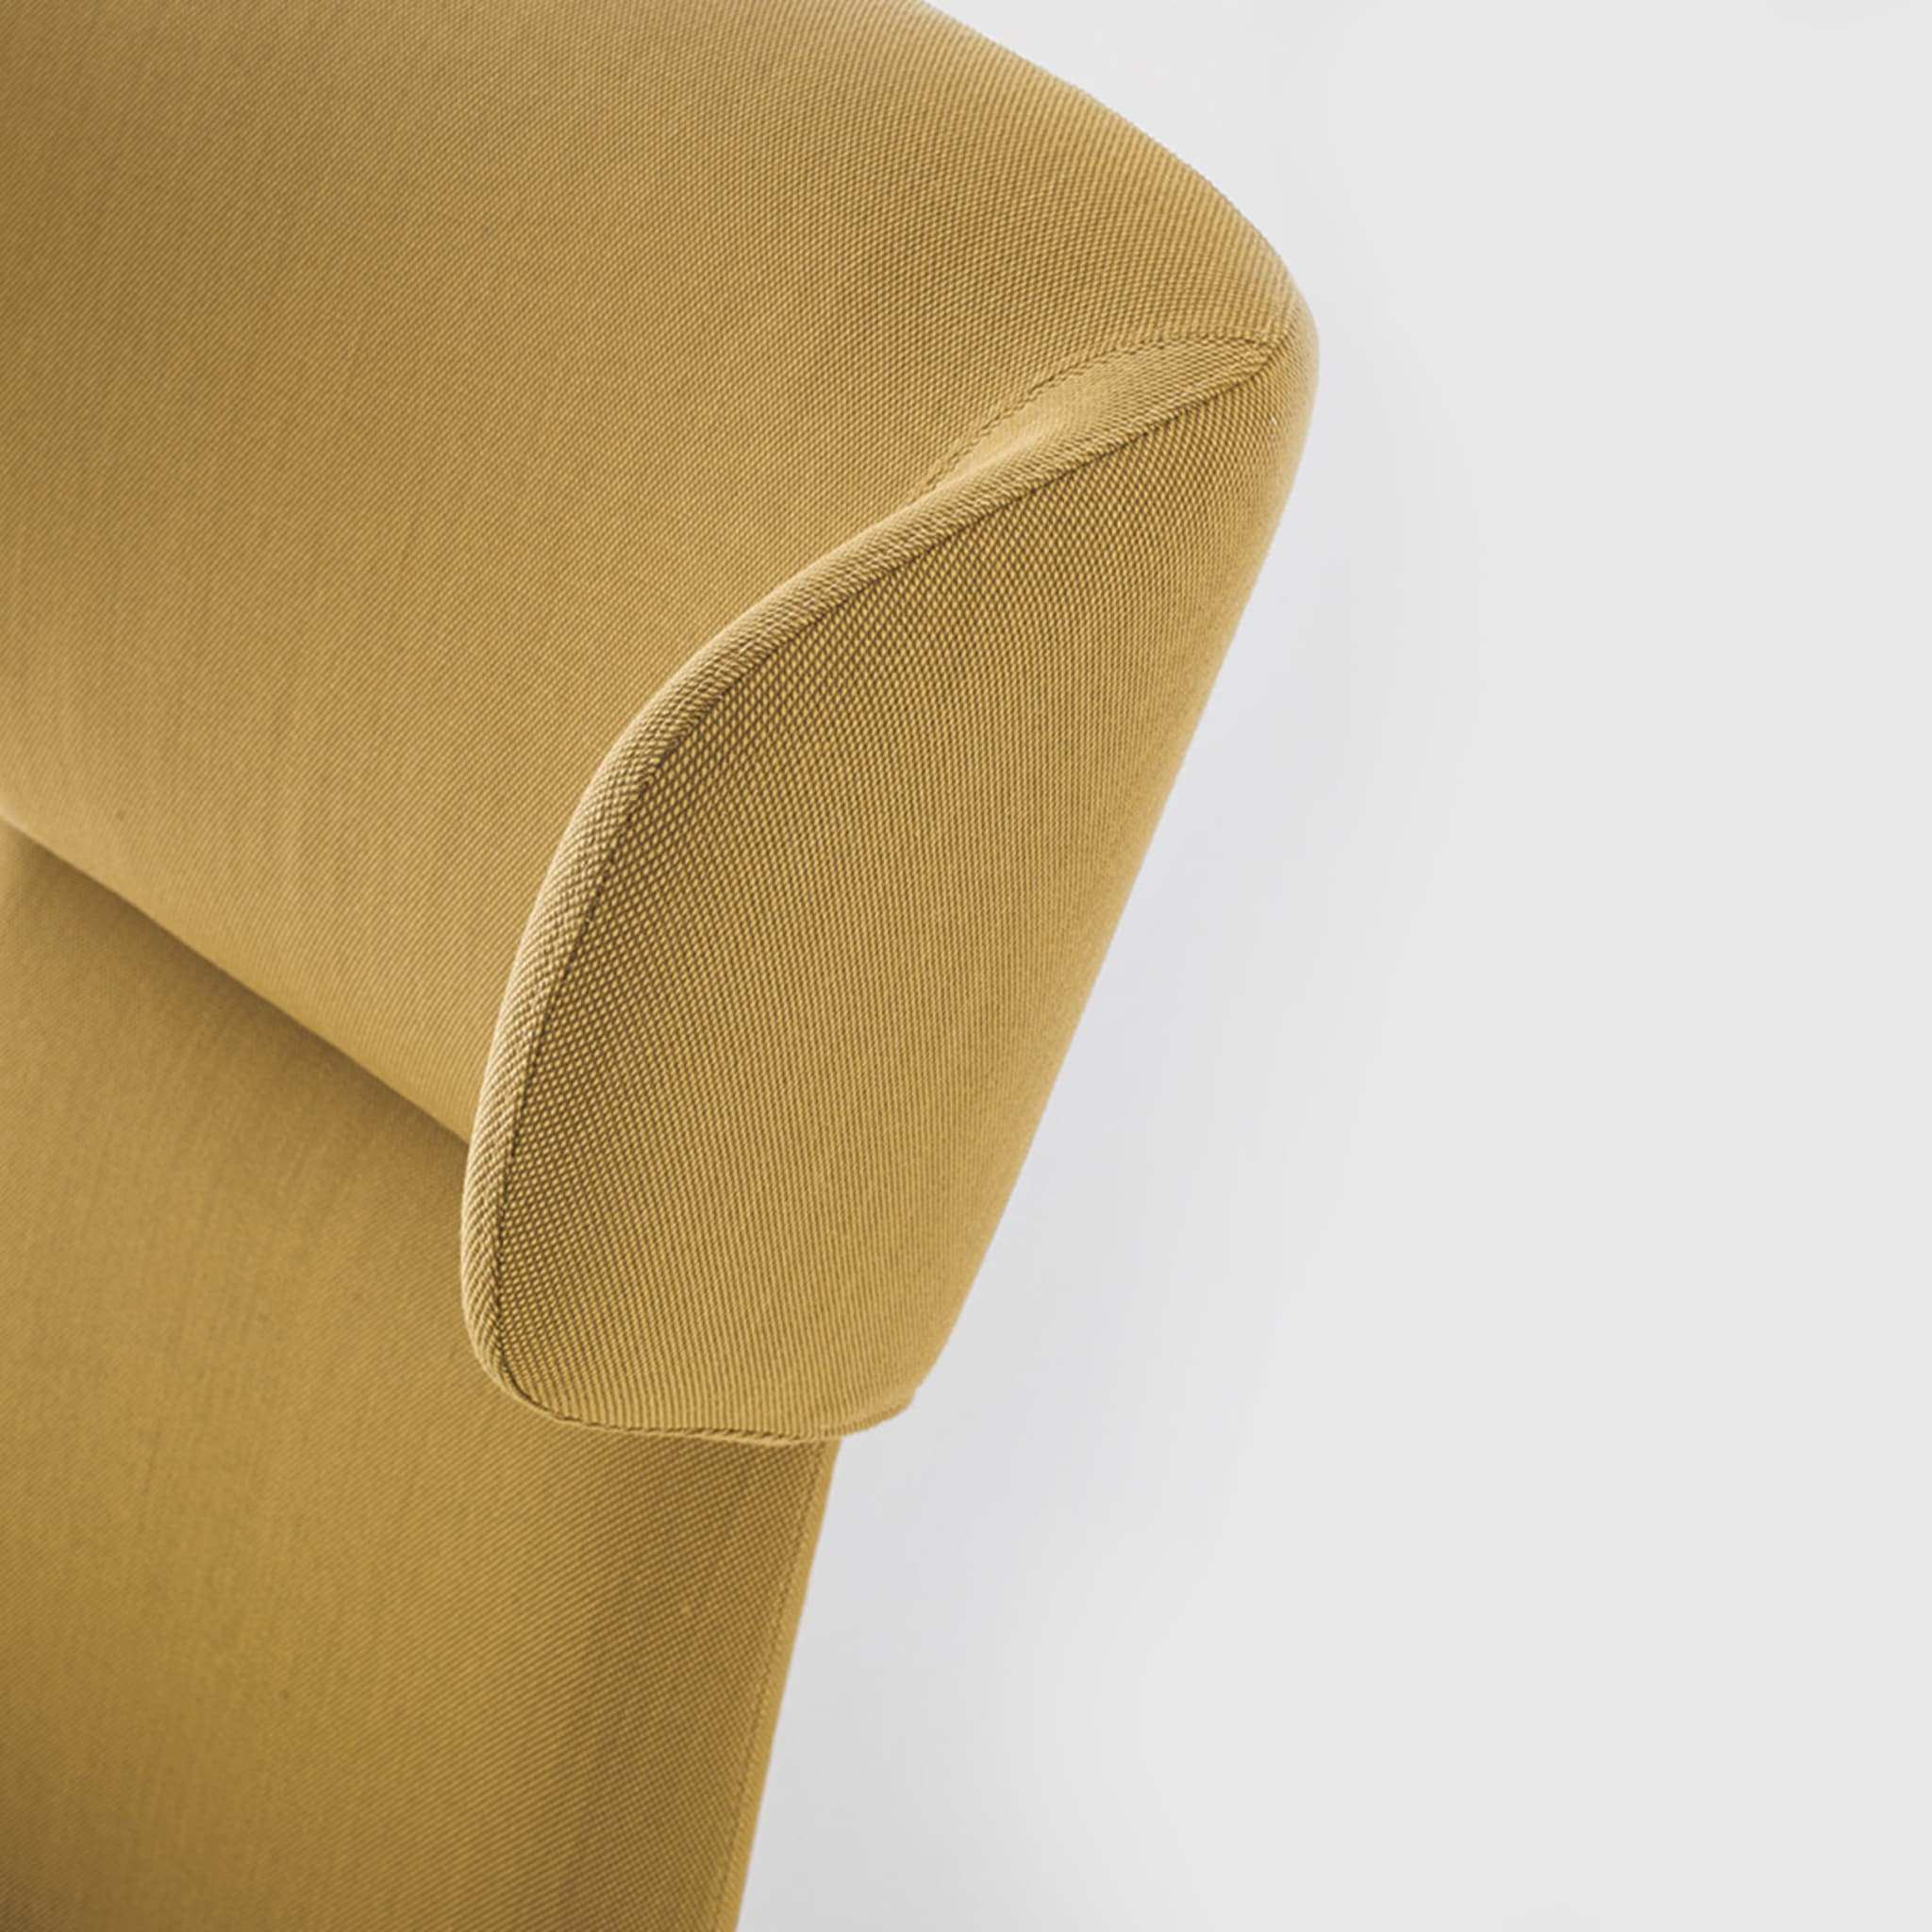 Myplace Sessel mit umhüllender kopfstütze by Michael Geldmacher - Alternative Ansicht 2